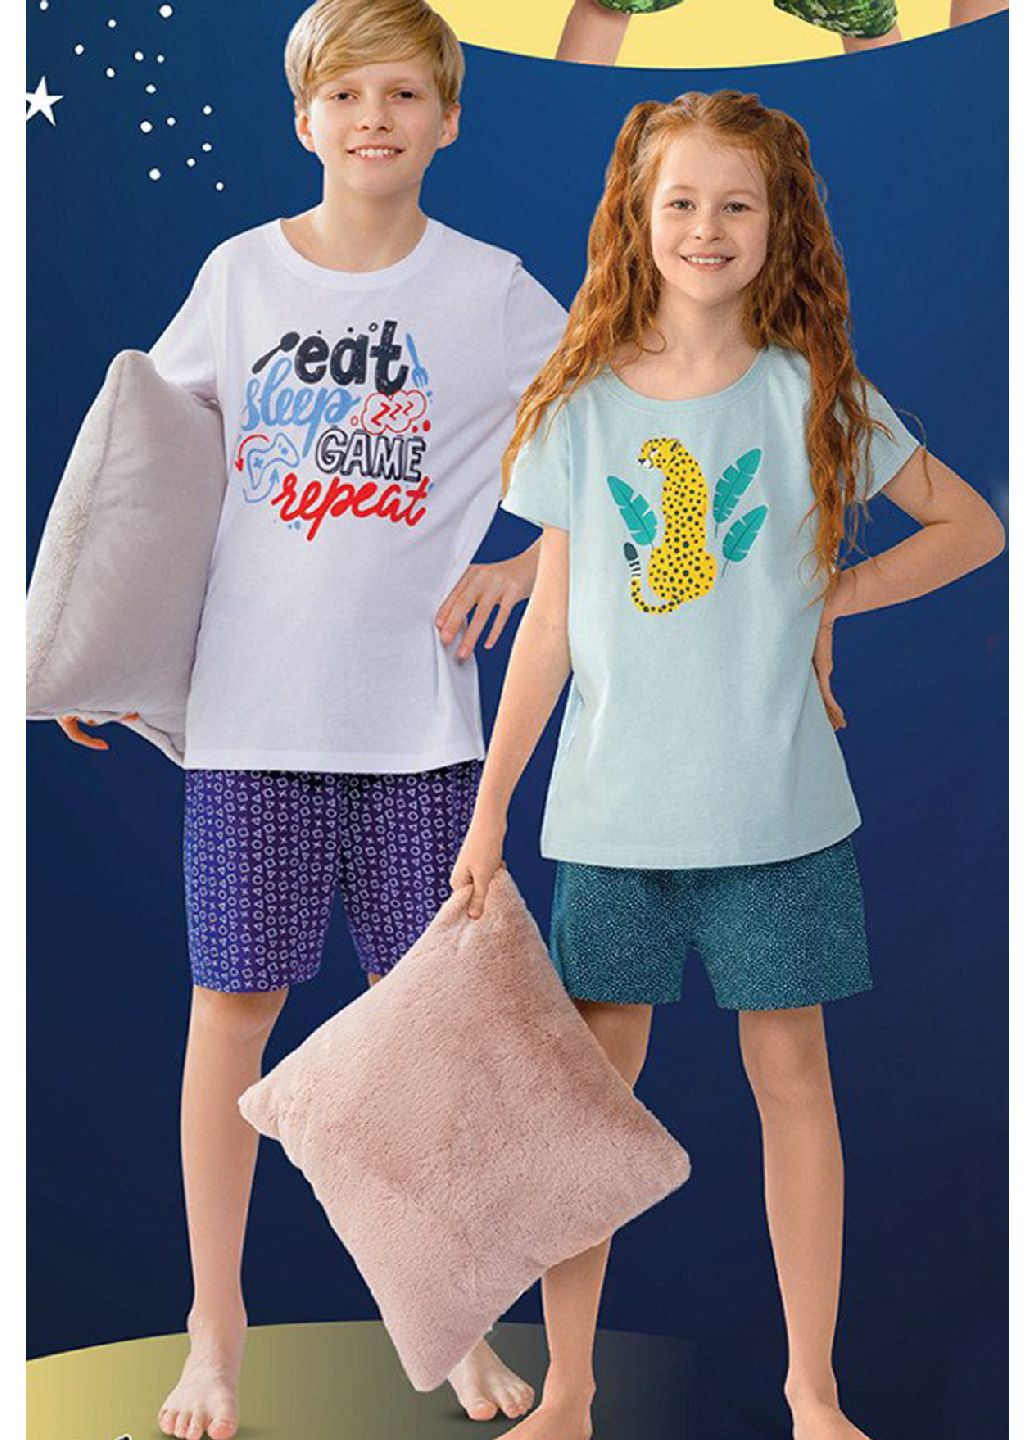 Комбинированная всесезон пижама (футболка, шорты) для мальчика футболка + шорты Cleve